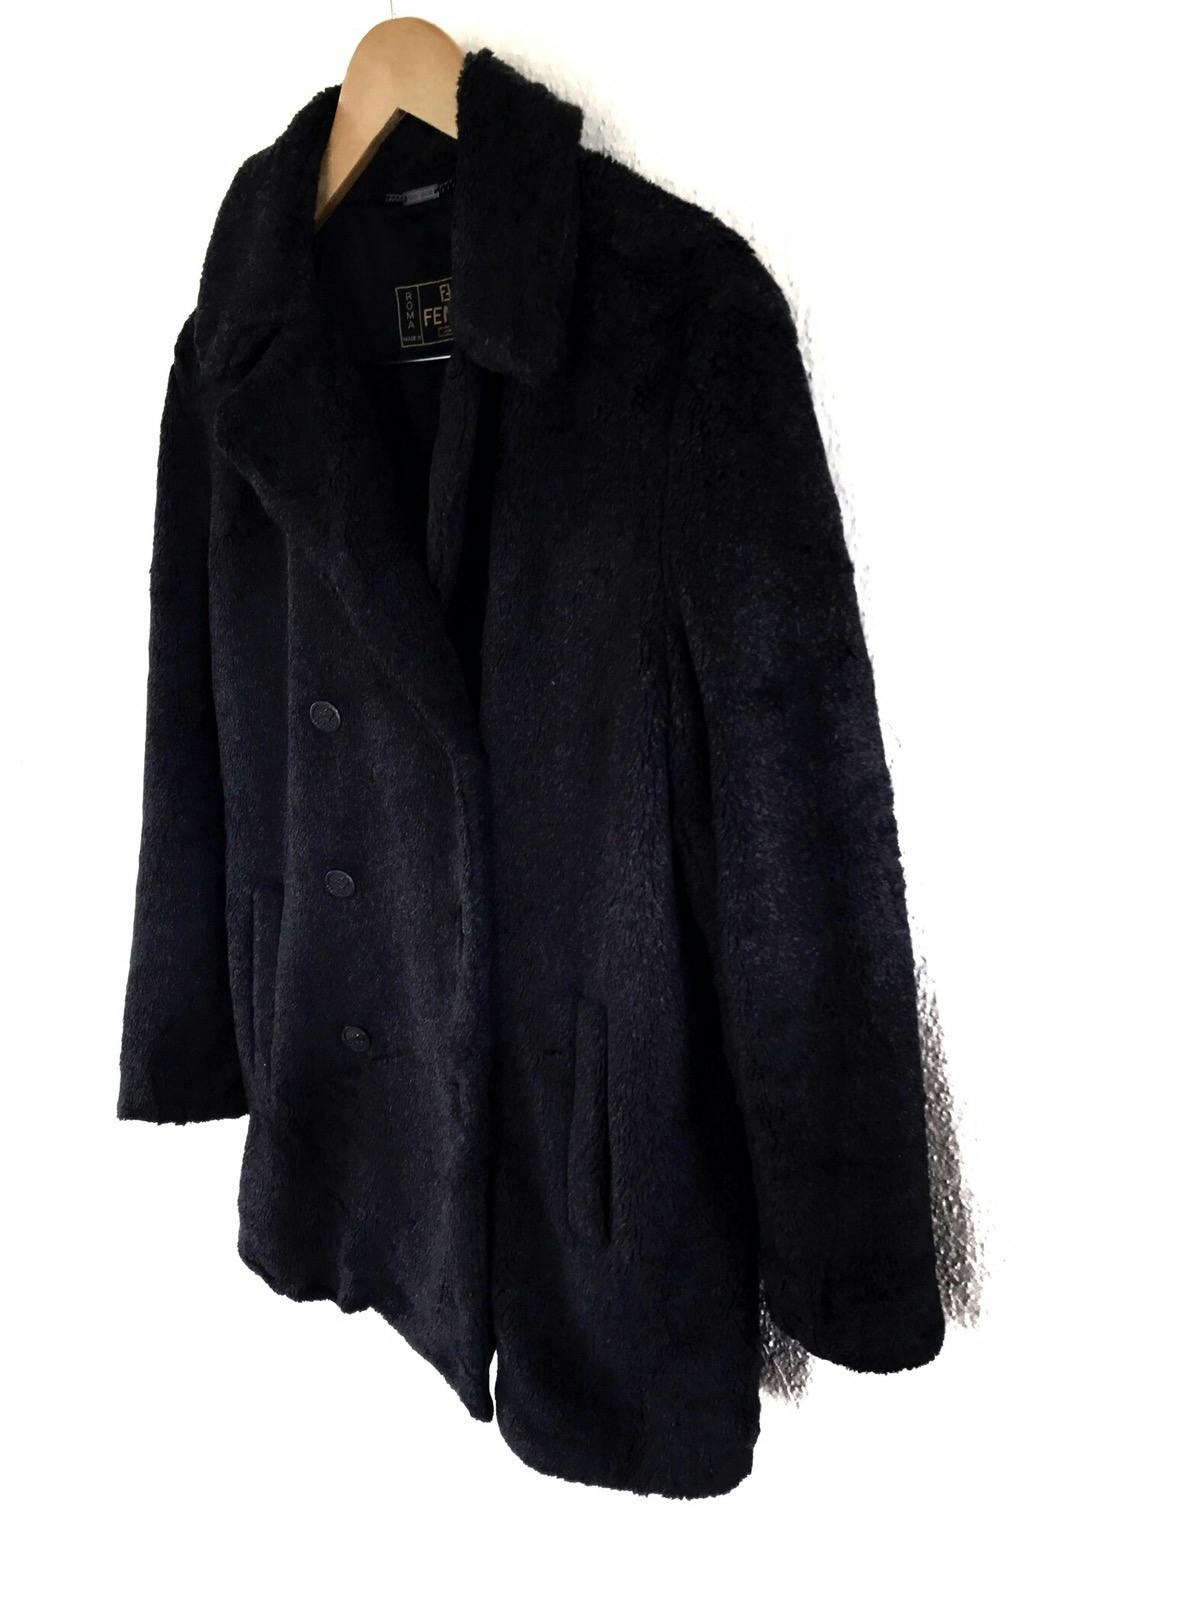 FENDI Jeans Boa Coat/ Fur Jacket Made in Italy - 4